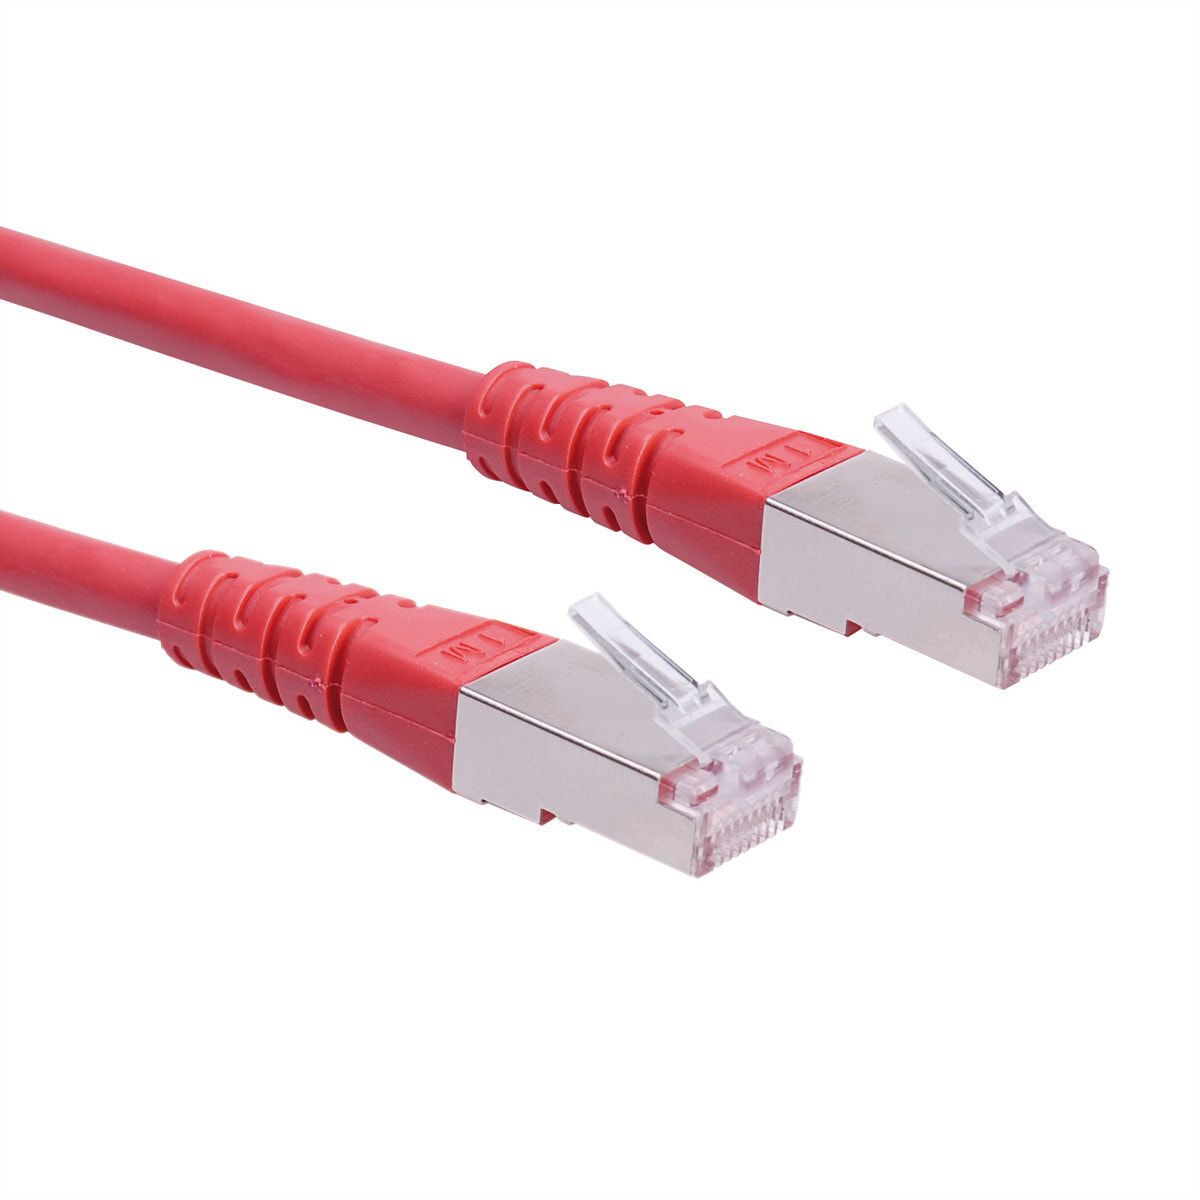 ROLINE S/FTP (PiMF) Patch Cord Cat.6, red 5.0m сетевой кабель Красный 21.15.1361